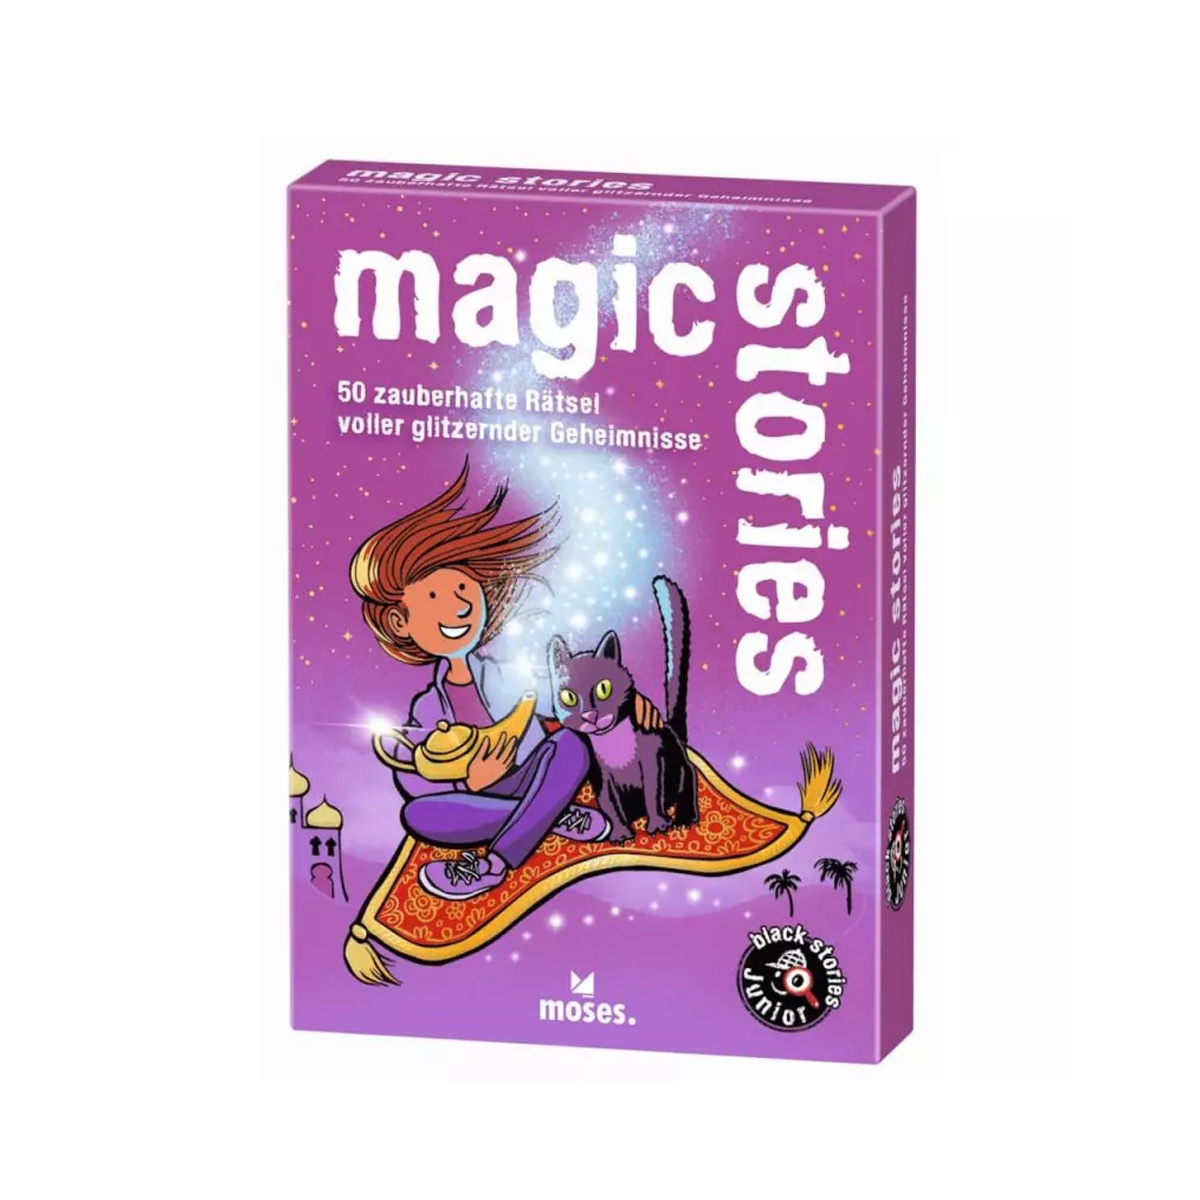 black stories Junior magic stories von Moses